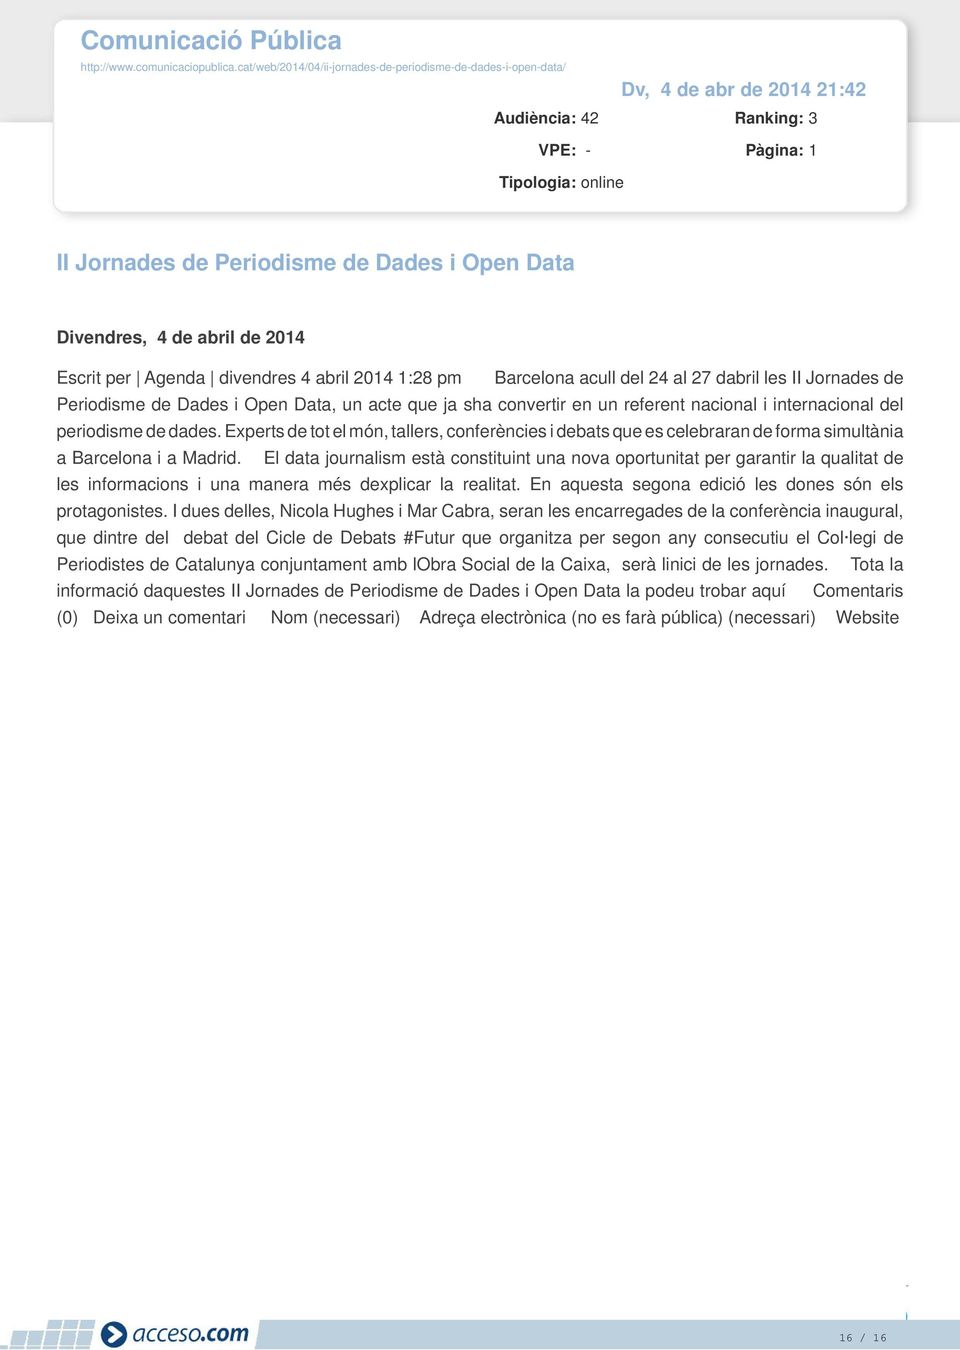 Escrit per Agenda divendres 4 abril 2014 1:28 pm Barcelona acull del 24 al 27 dabril les II Jornades de Periodisme de Dades i Open Data, un acte que ja sha convertir en un referent nacional i